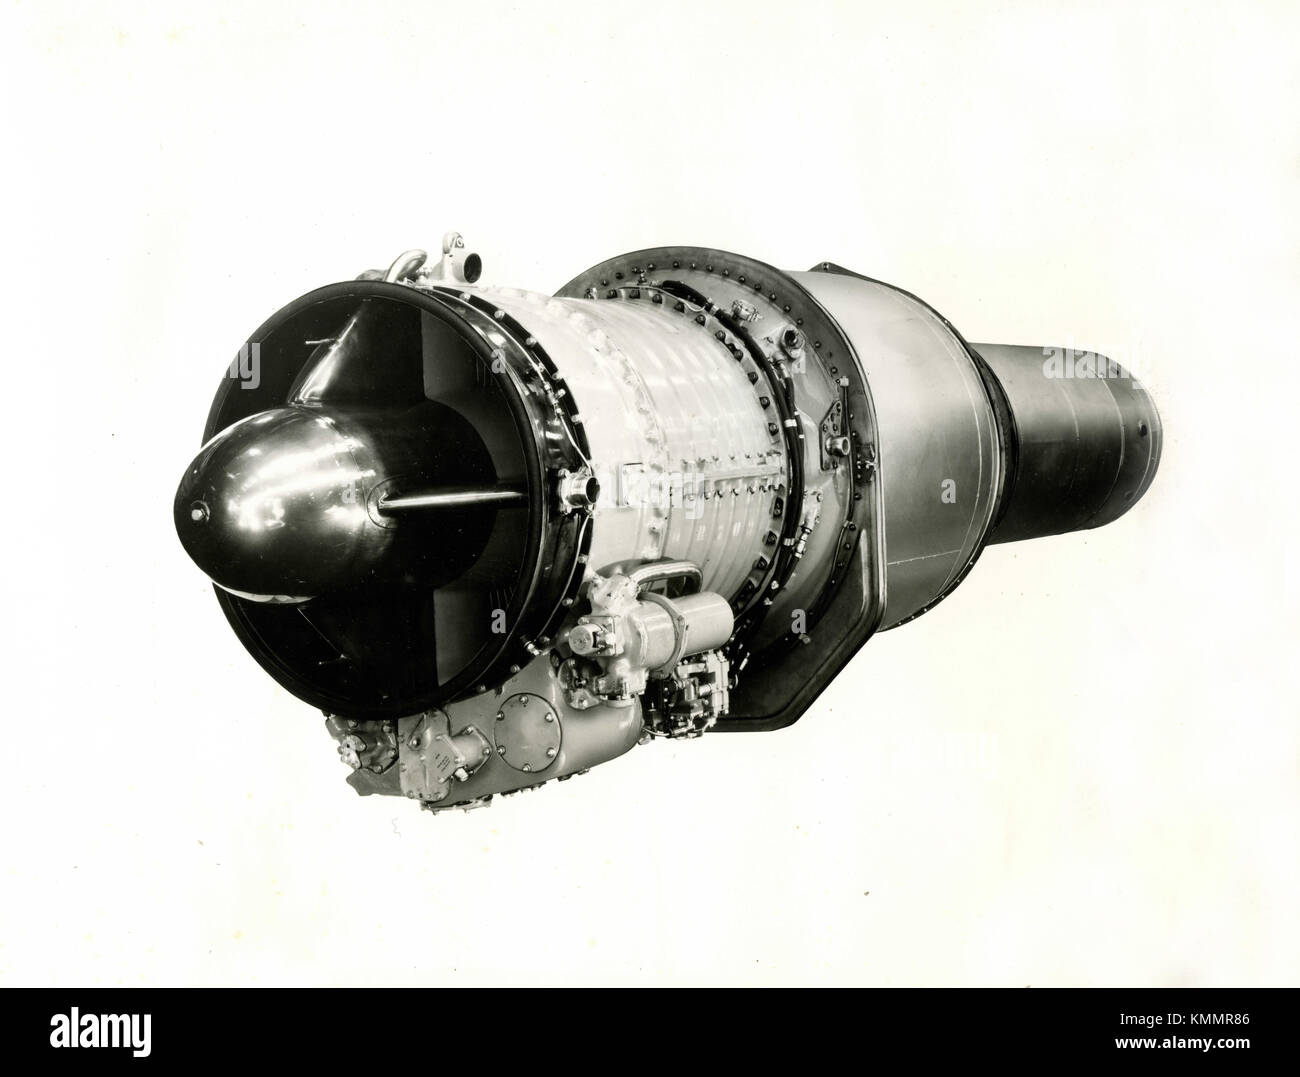 Bristol Orpheus 4850 LB motore di aviazione, Regno Unito degli anni cinquanta Foto Stock